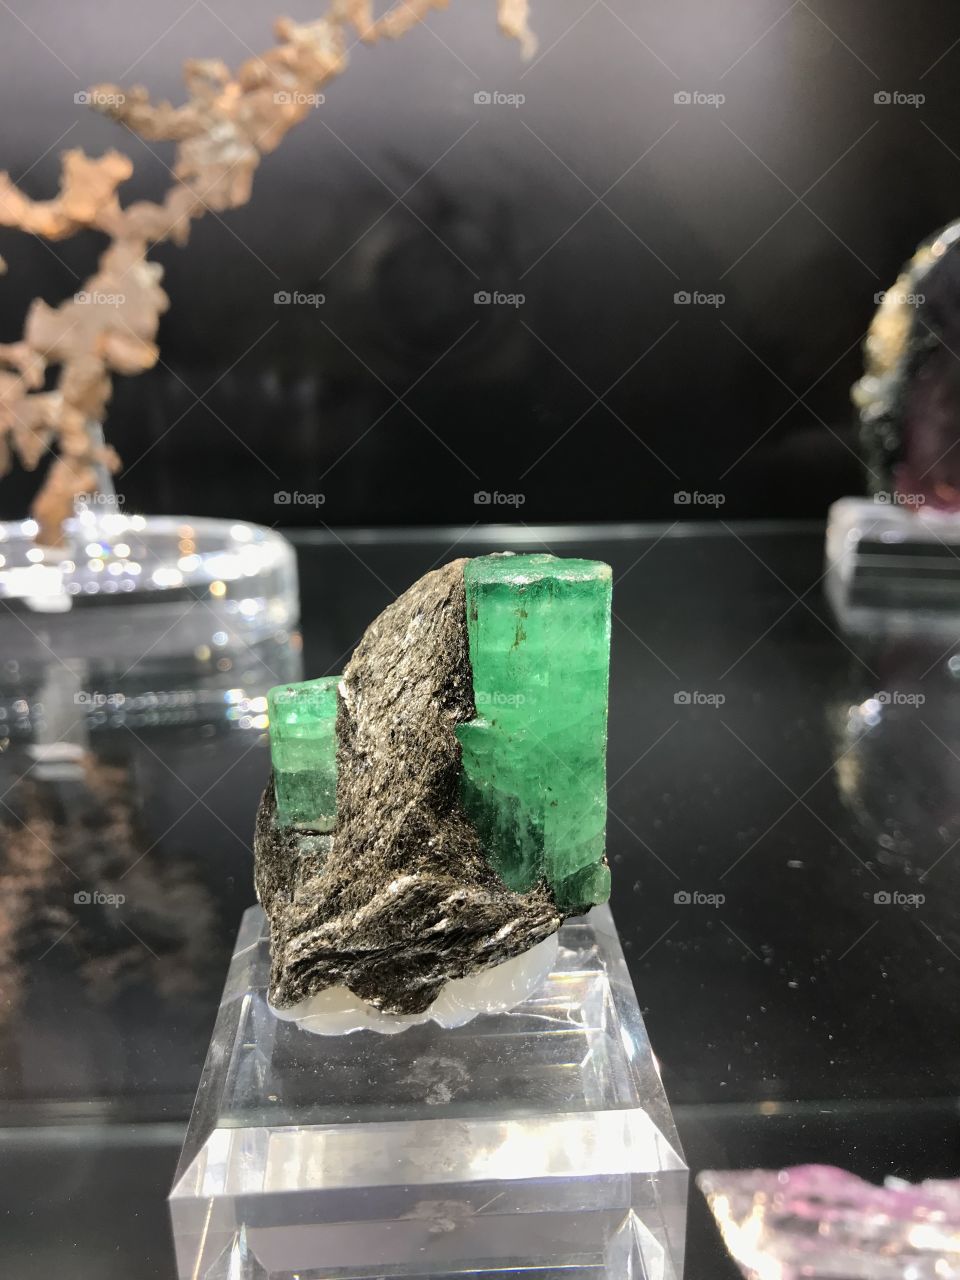 Tucson Arizona gem show gem specimen